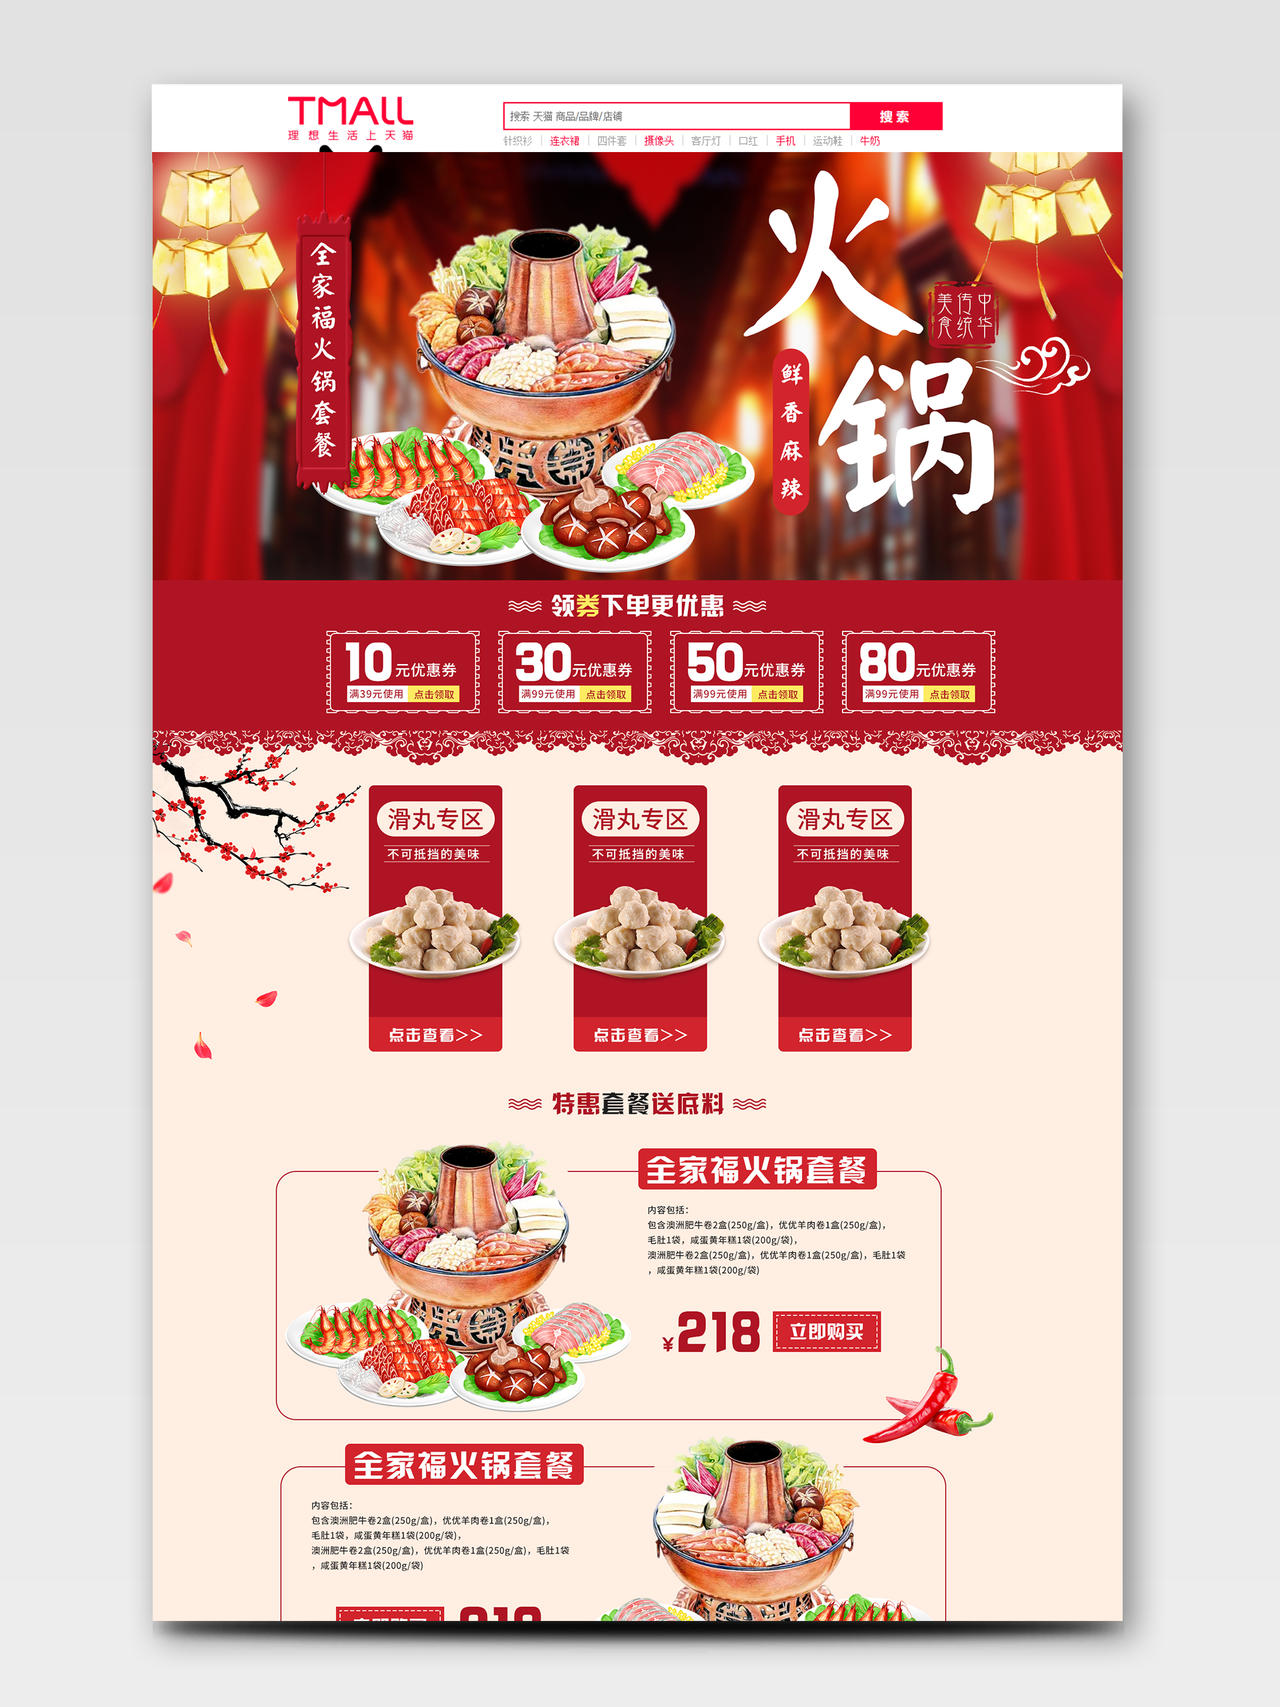 红色简约中国风鲜香麻辣全家福火锅套餐美食PC端首页新疆美食